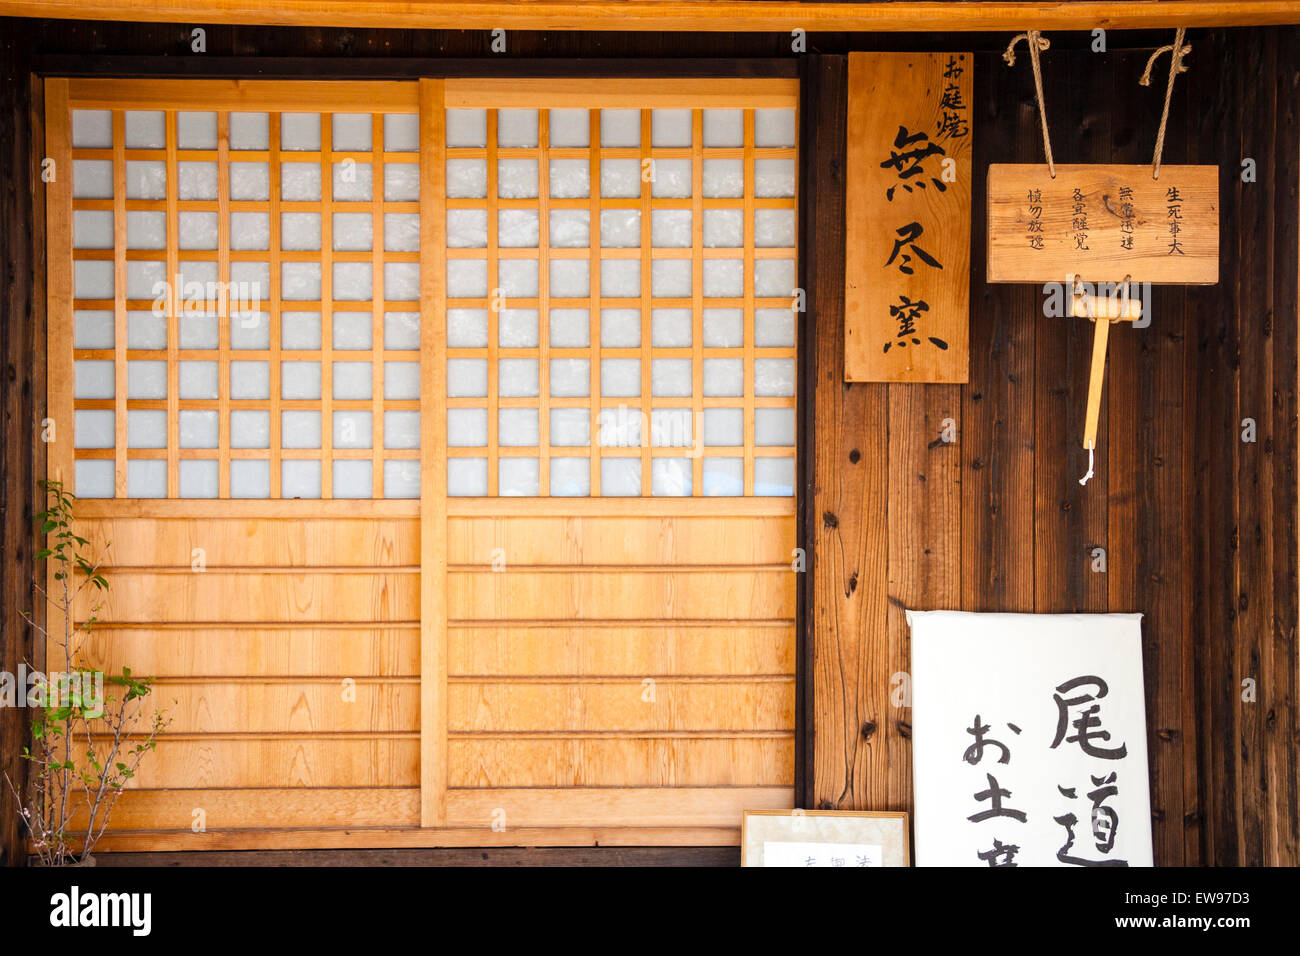 Hodoji Tempio a Onomichi, Giappone. Dettaglio della porta scorrevole in legno e shoji, con la carta traslucida e lavoro a traliccio che copre la metà superiore. Cartelli appesi. Foto Stock